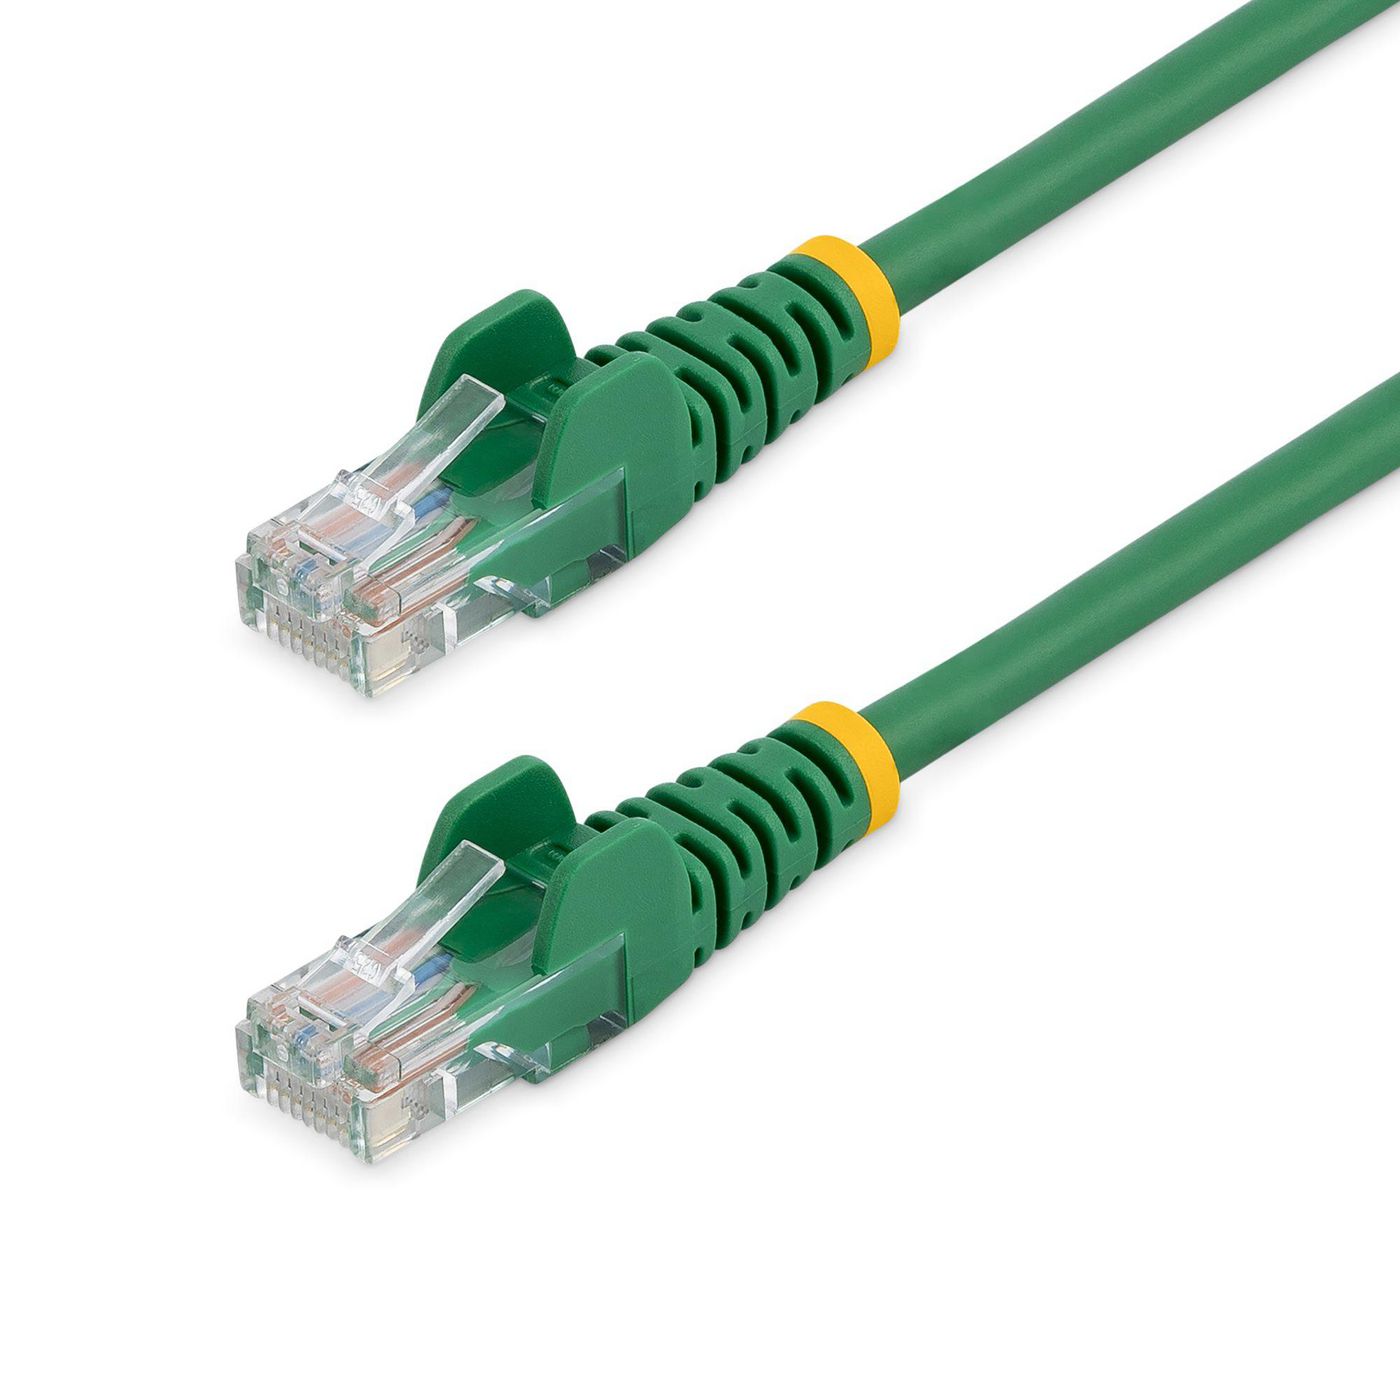 STARTECH.COM 0,5m Cat5e Ethernet Netzwerkkabel Snagless mit RJ45 - Cat 5e UTP Kabel - Grün